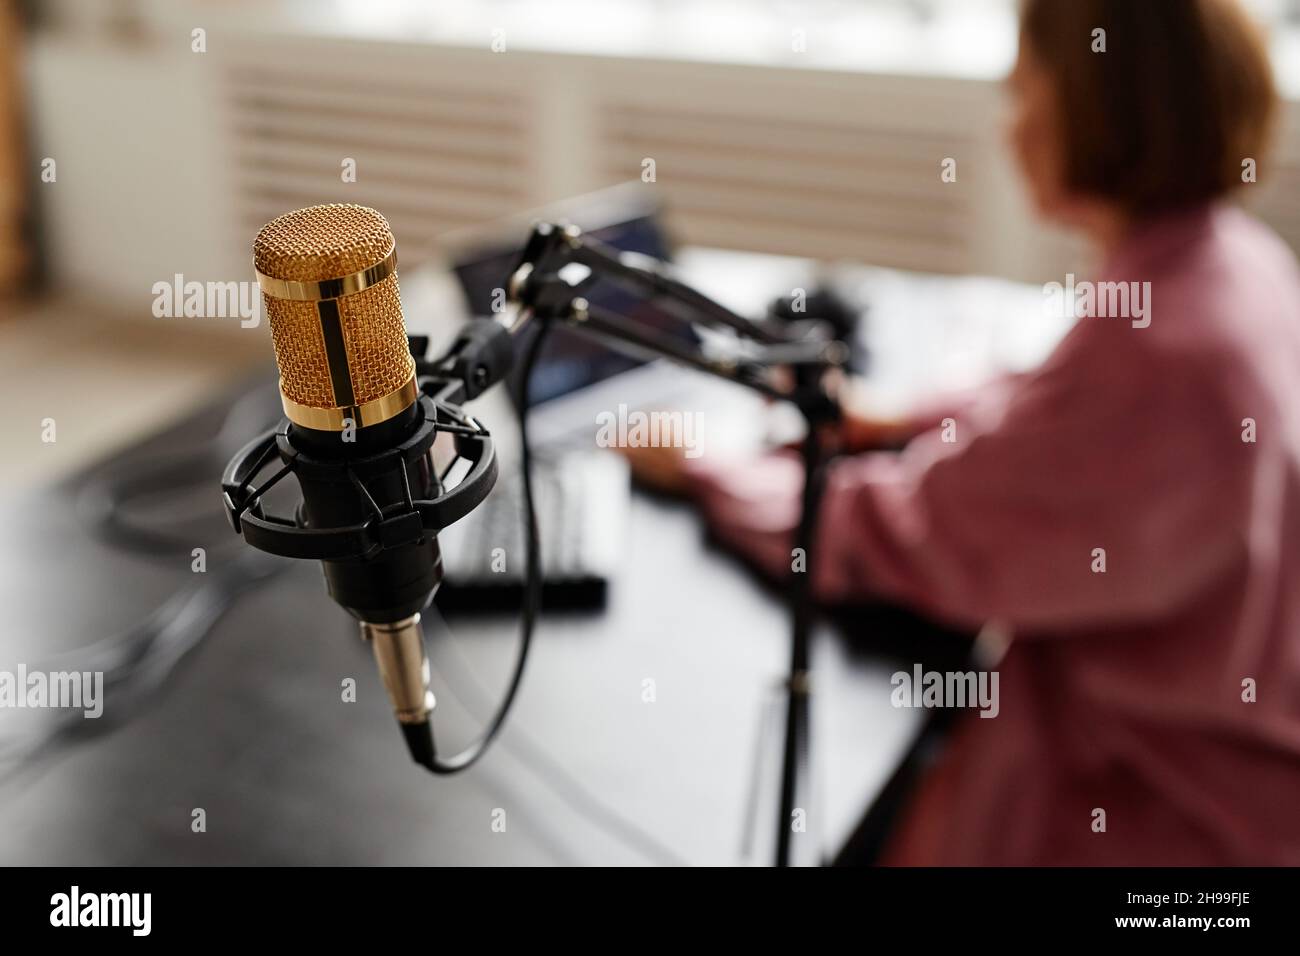 Primo piano del microfono da studio con il creatore femminile che imposta l'apparecchiatura di registrazione in background, spazio di copia Foto Stock